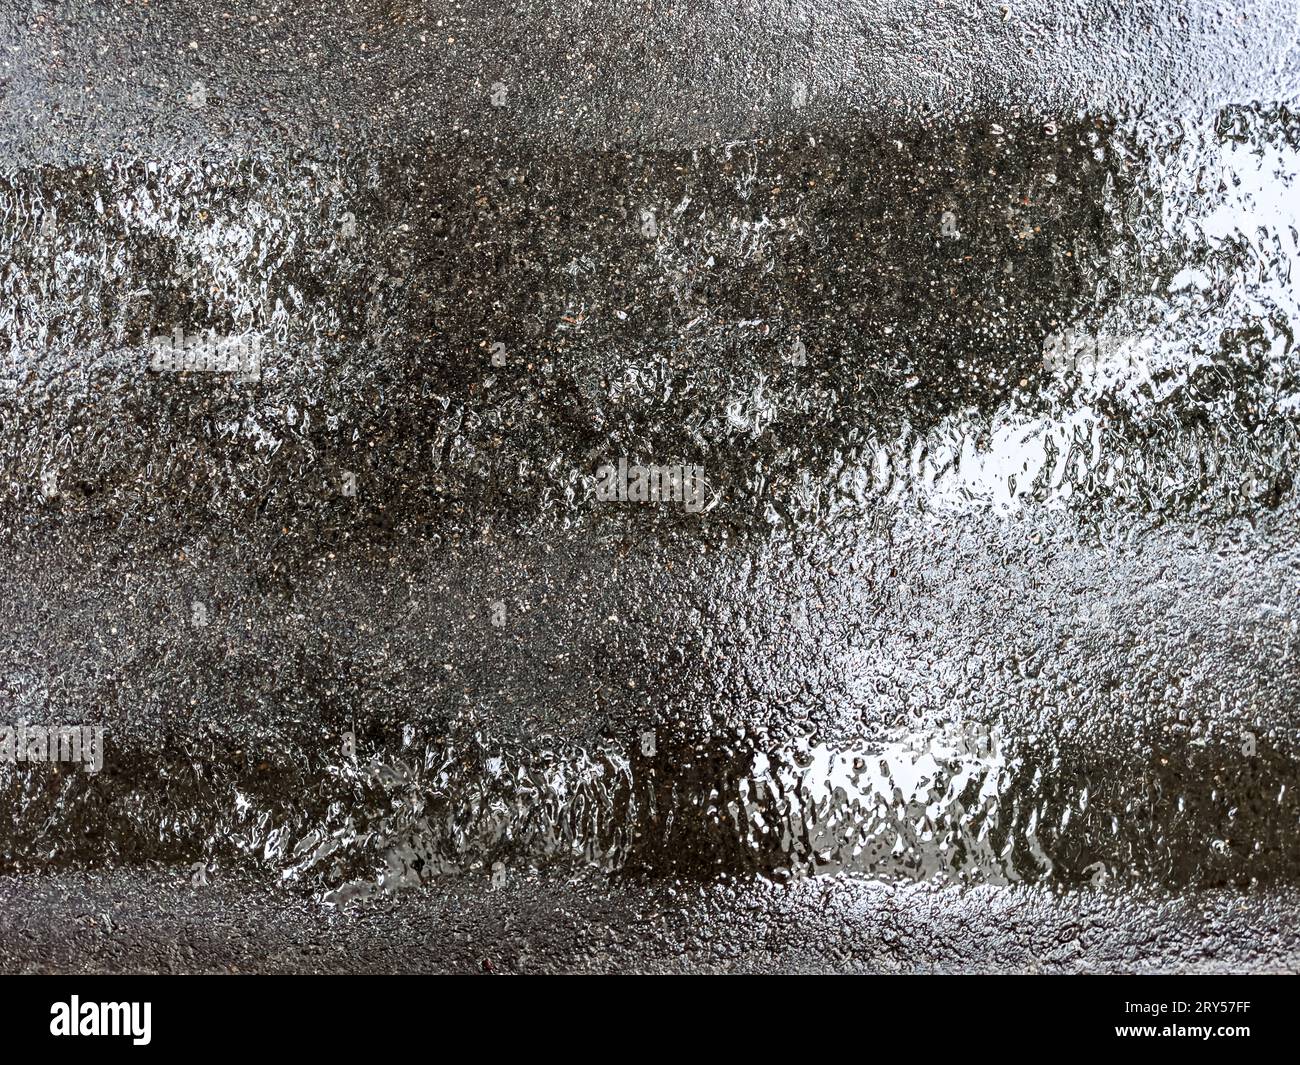 Nasse, dunkle Asphaltstraße nach starkem Regen. Himmelsreflexionen in der nassen Oberfläche. Stockfoto